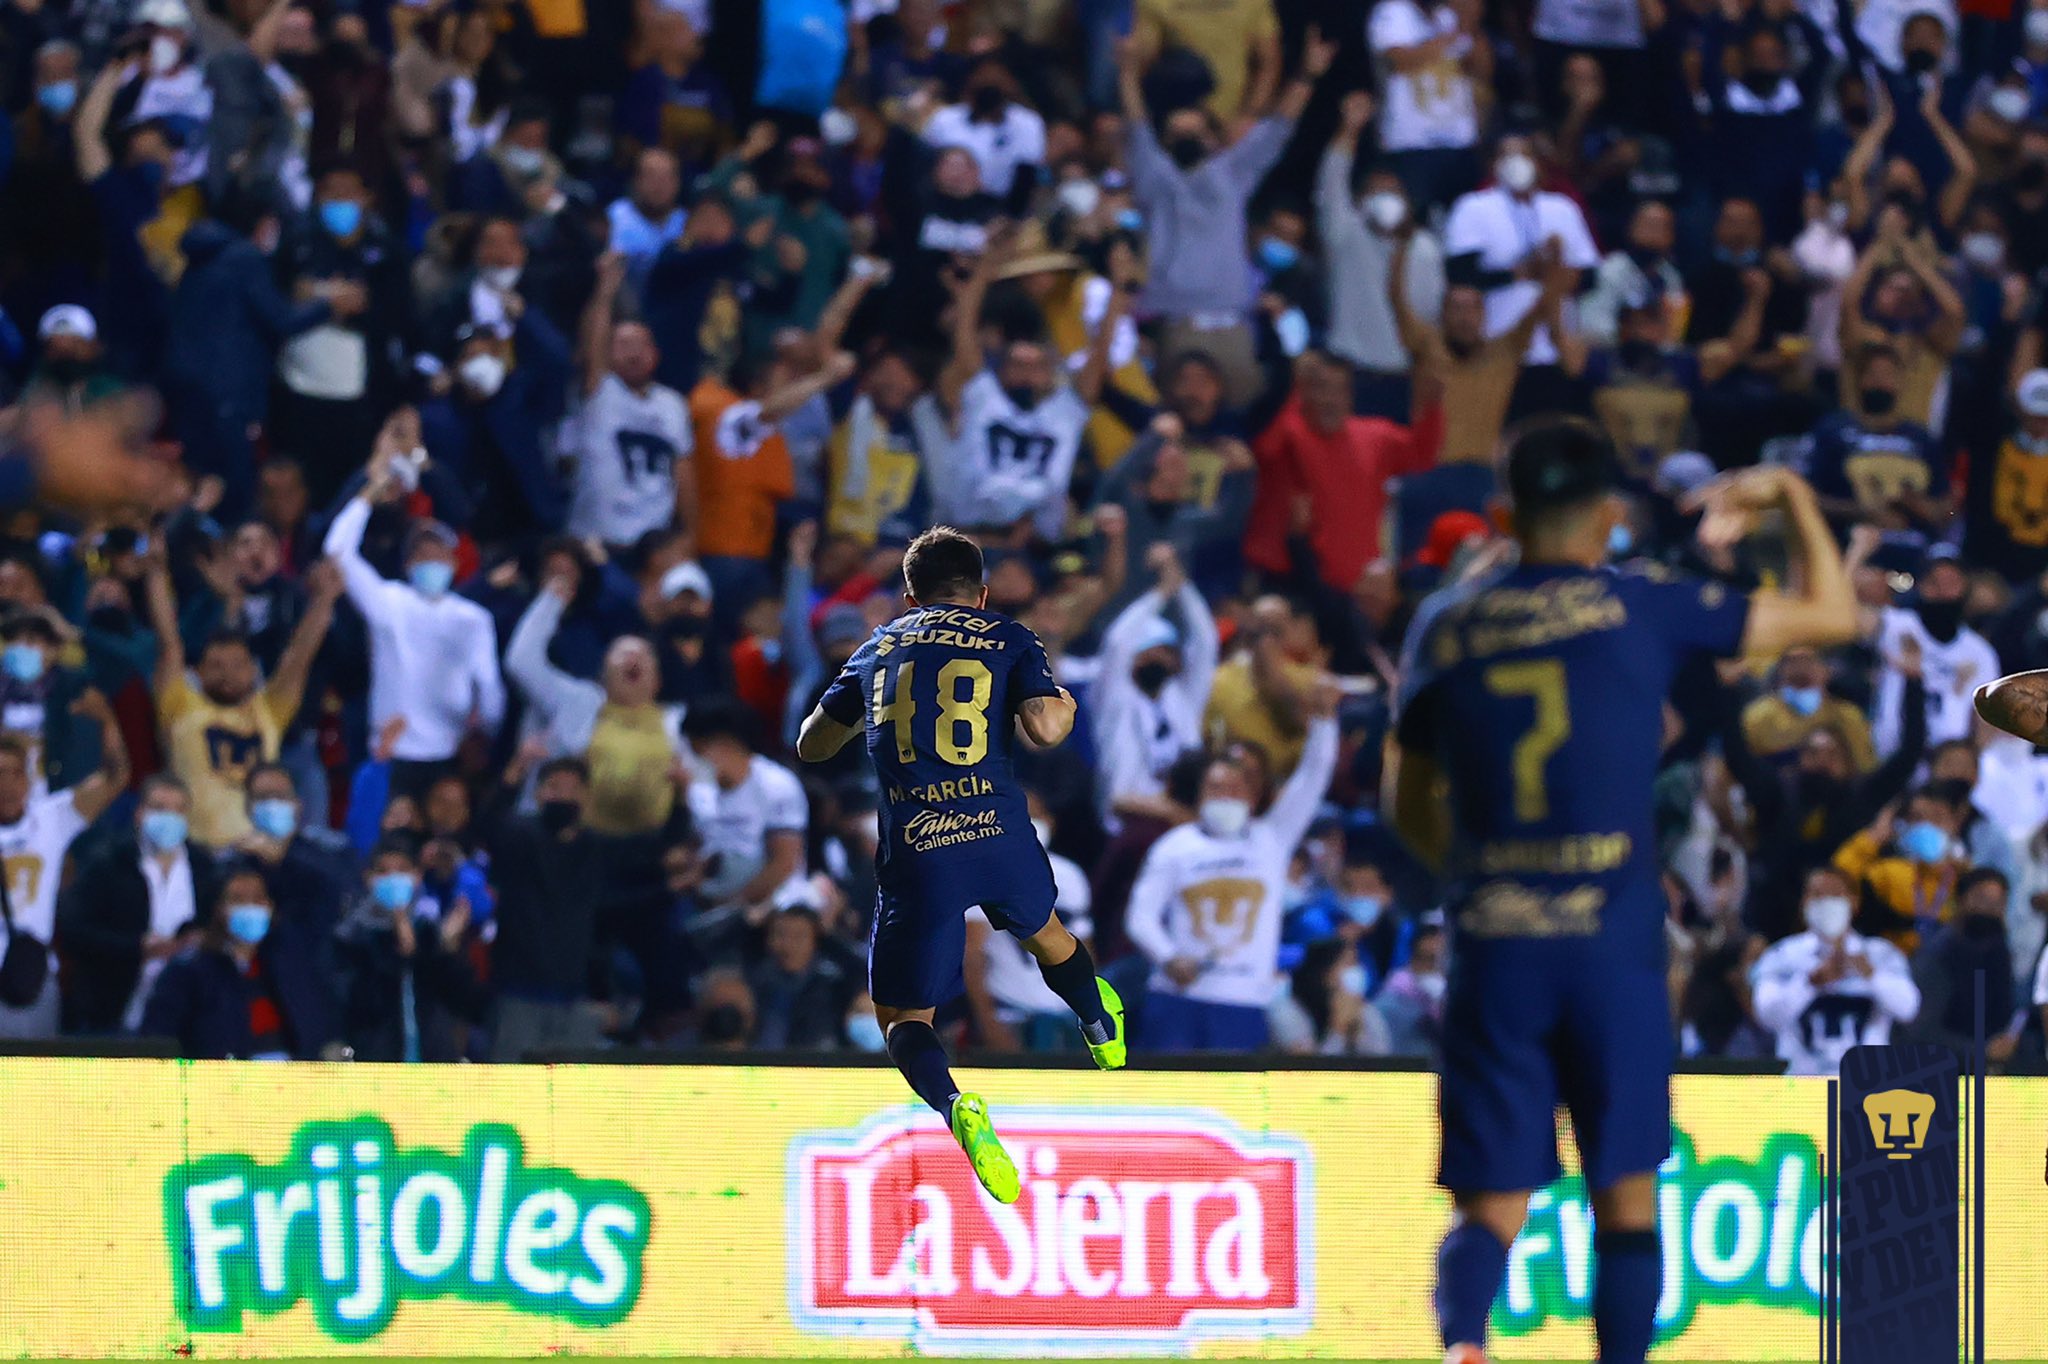 Los Pumas golearon al Querétaro y sumaron su segundo triunfo